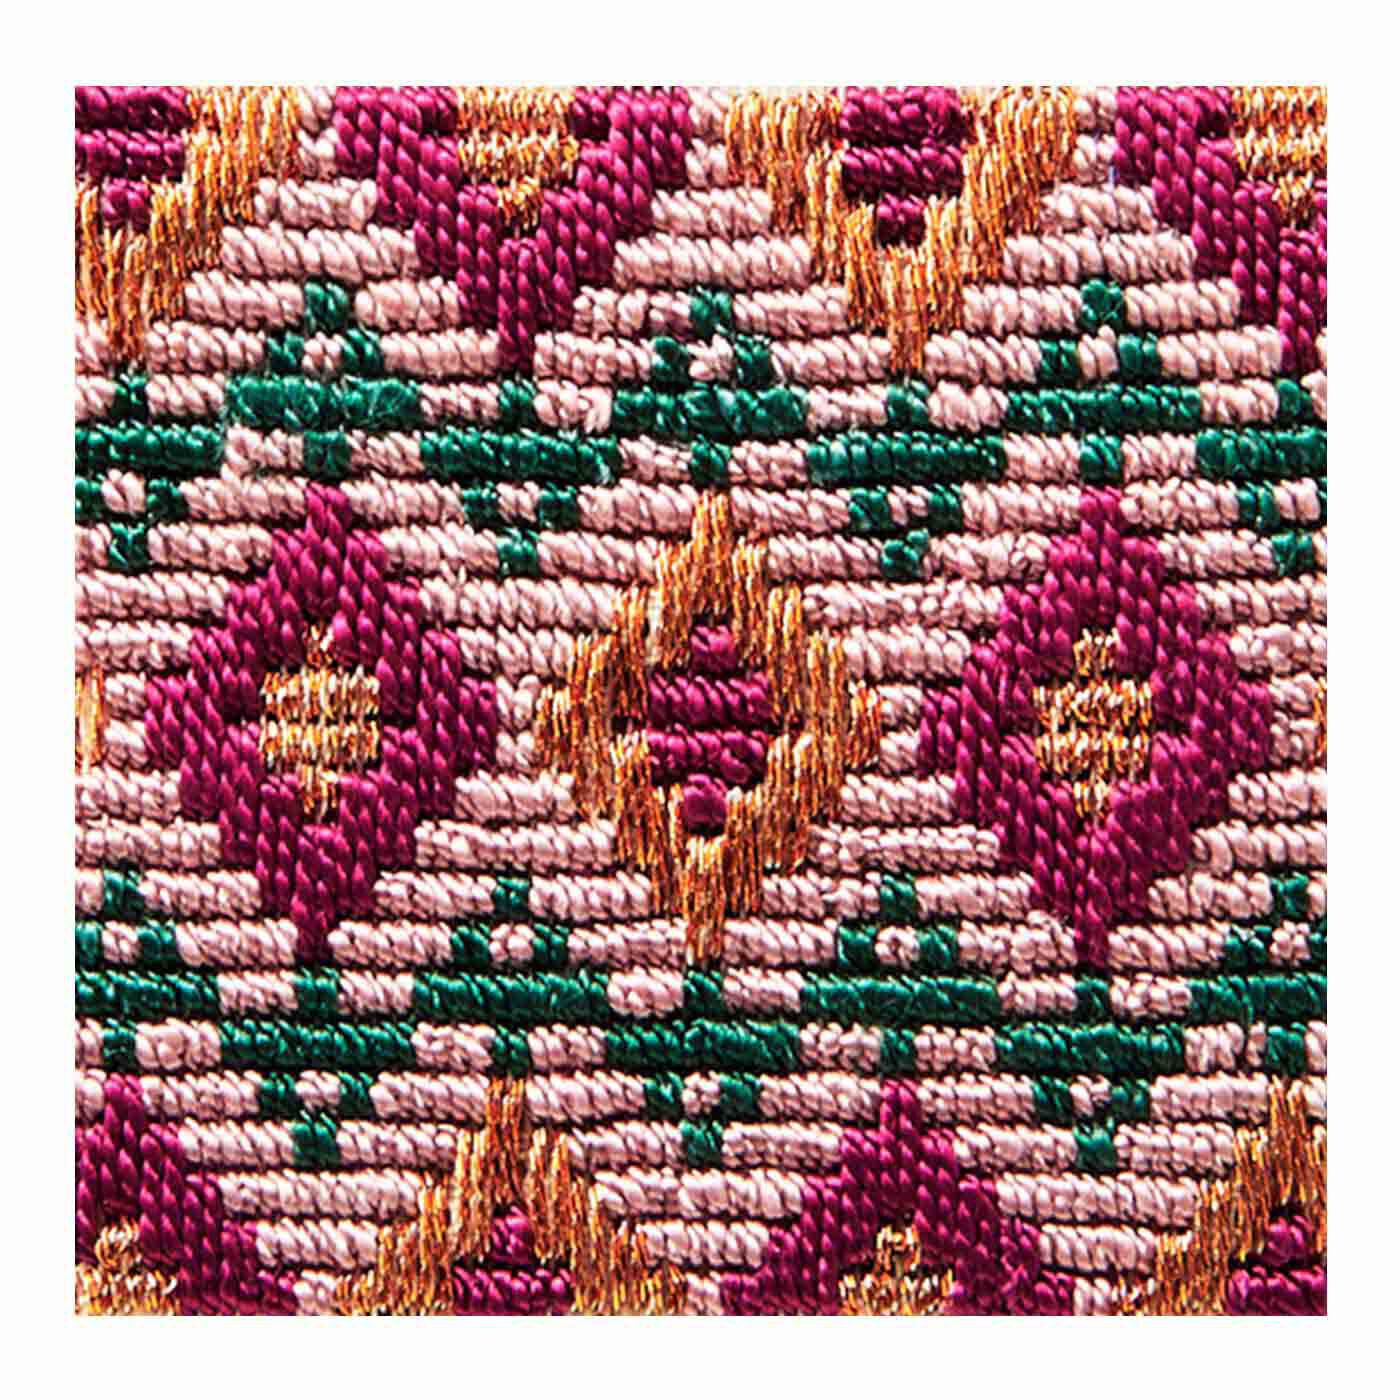 クチュリエ|絹糸の光沢にうっとり さまざまな模様を楽しむ絽（ろ）刺しの会|ざくろ菱